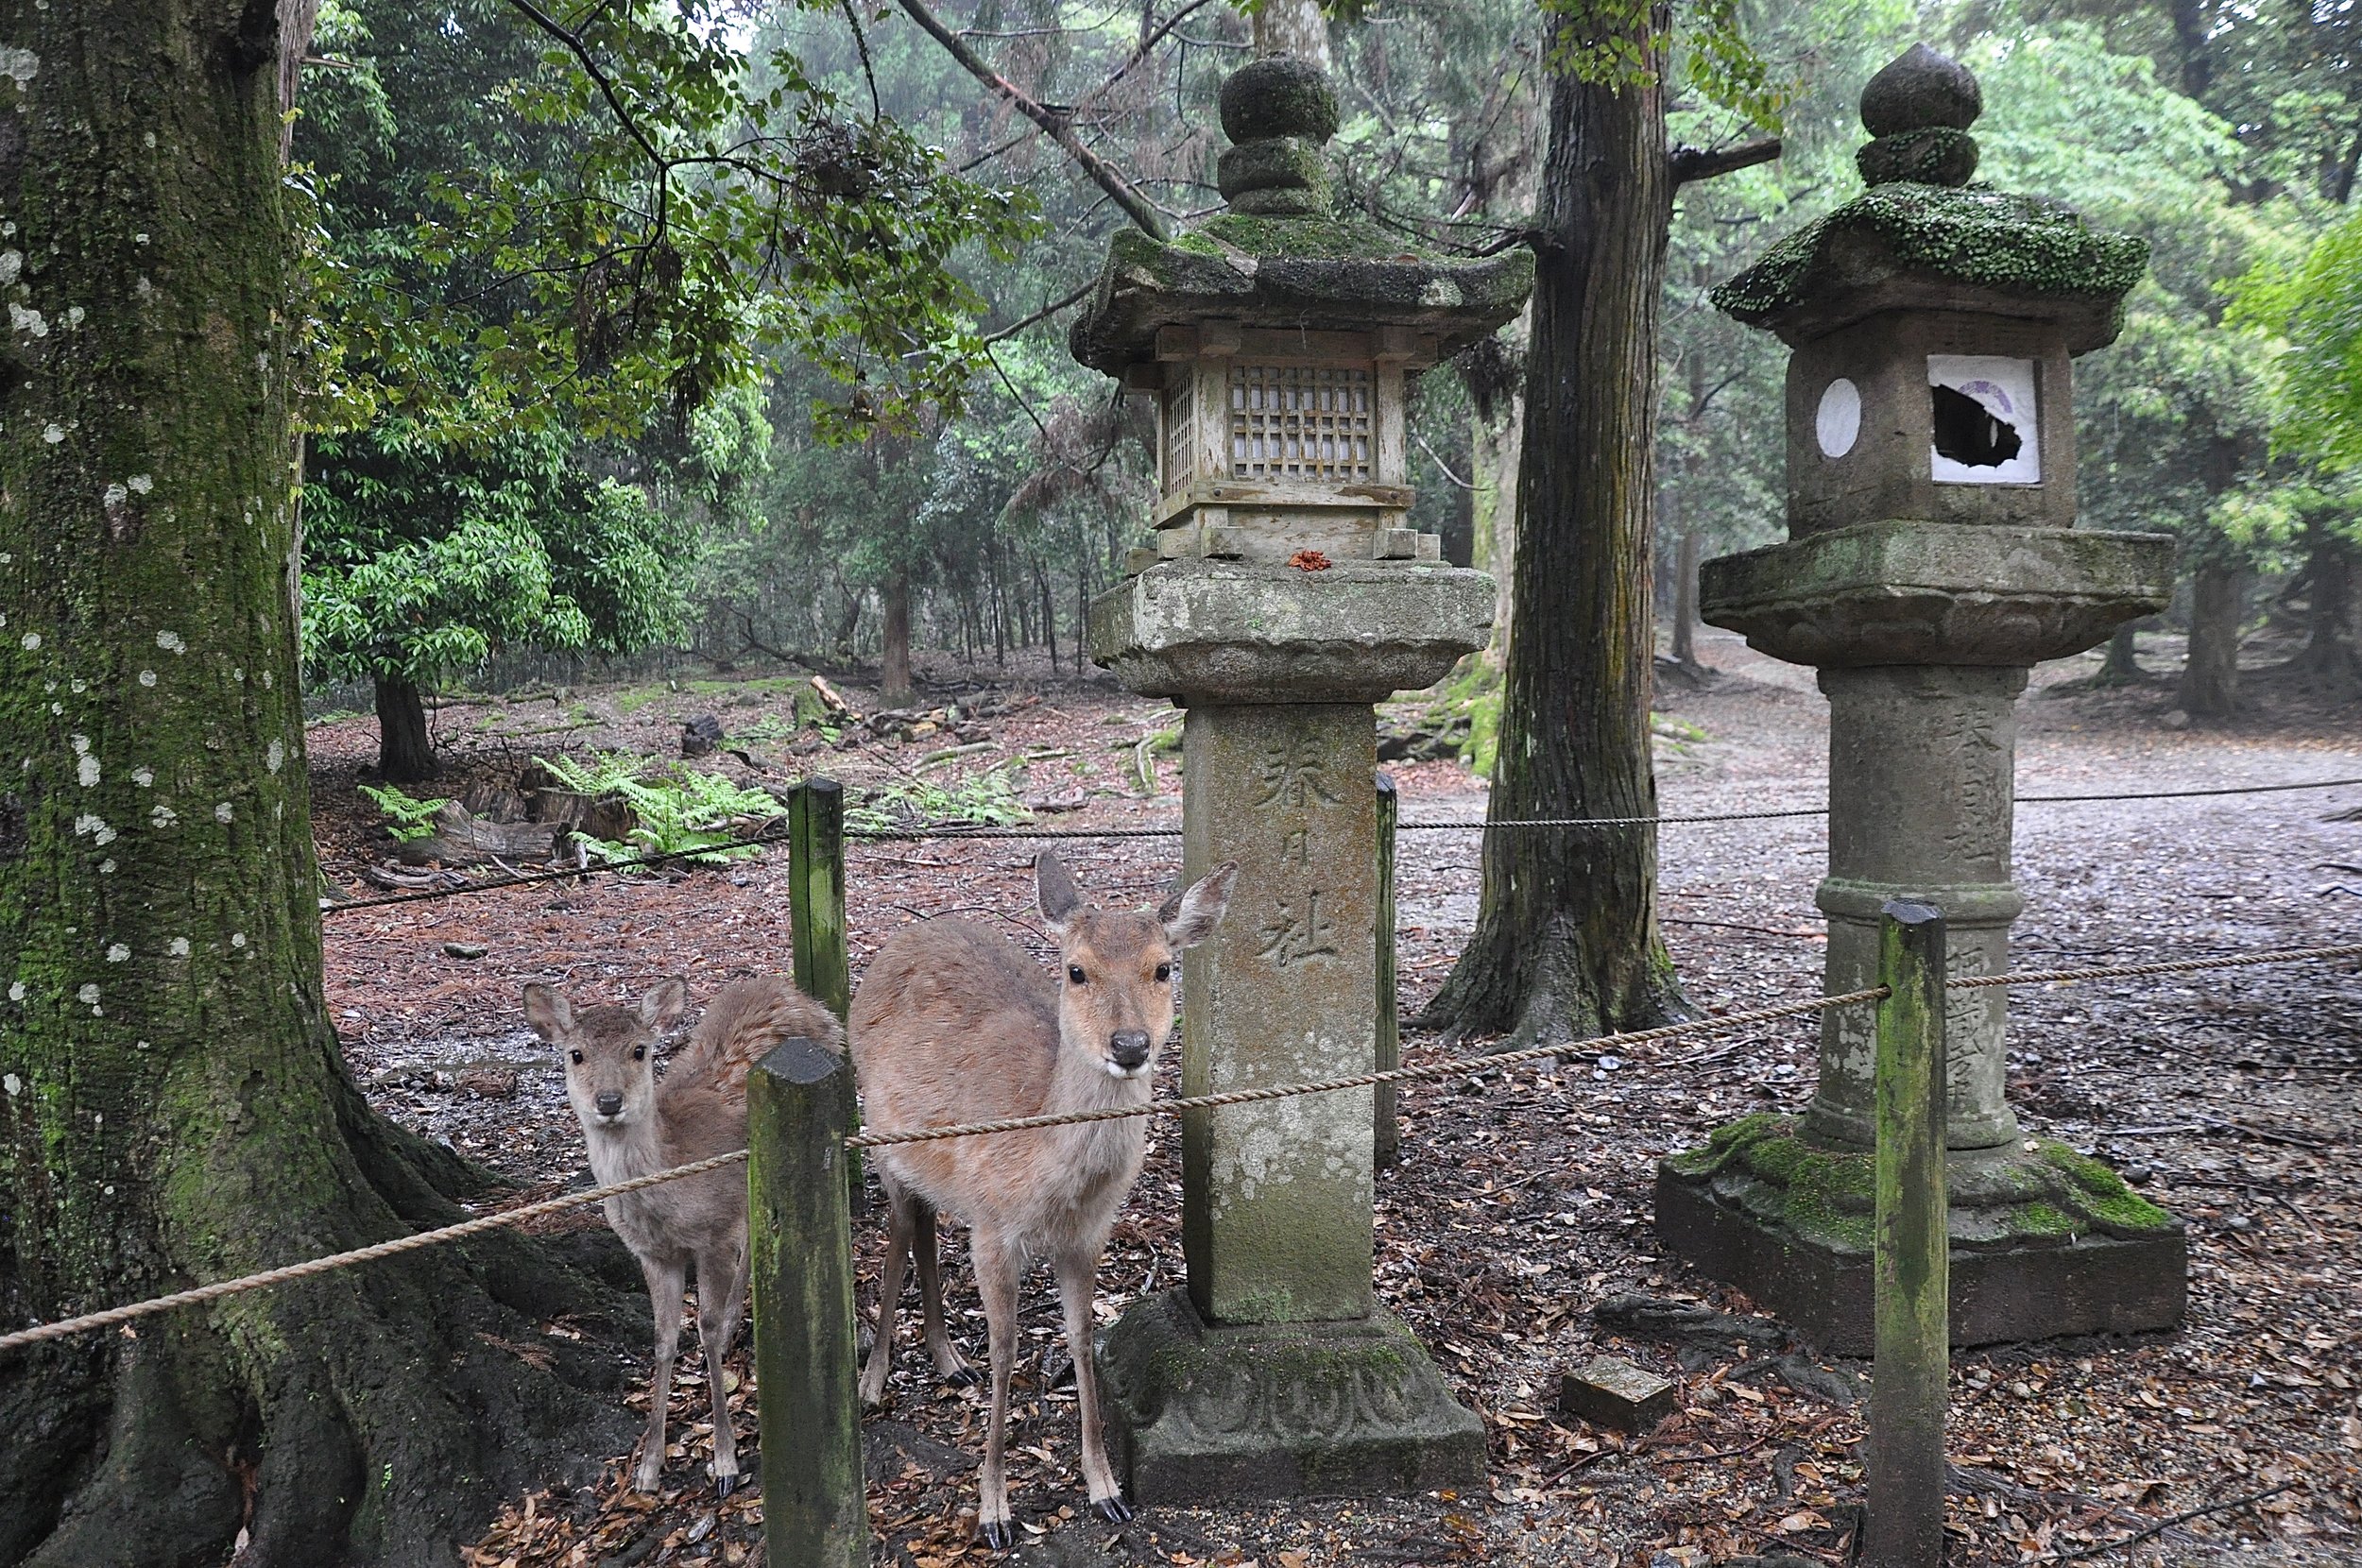 Nara, Japan